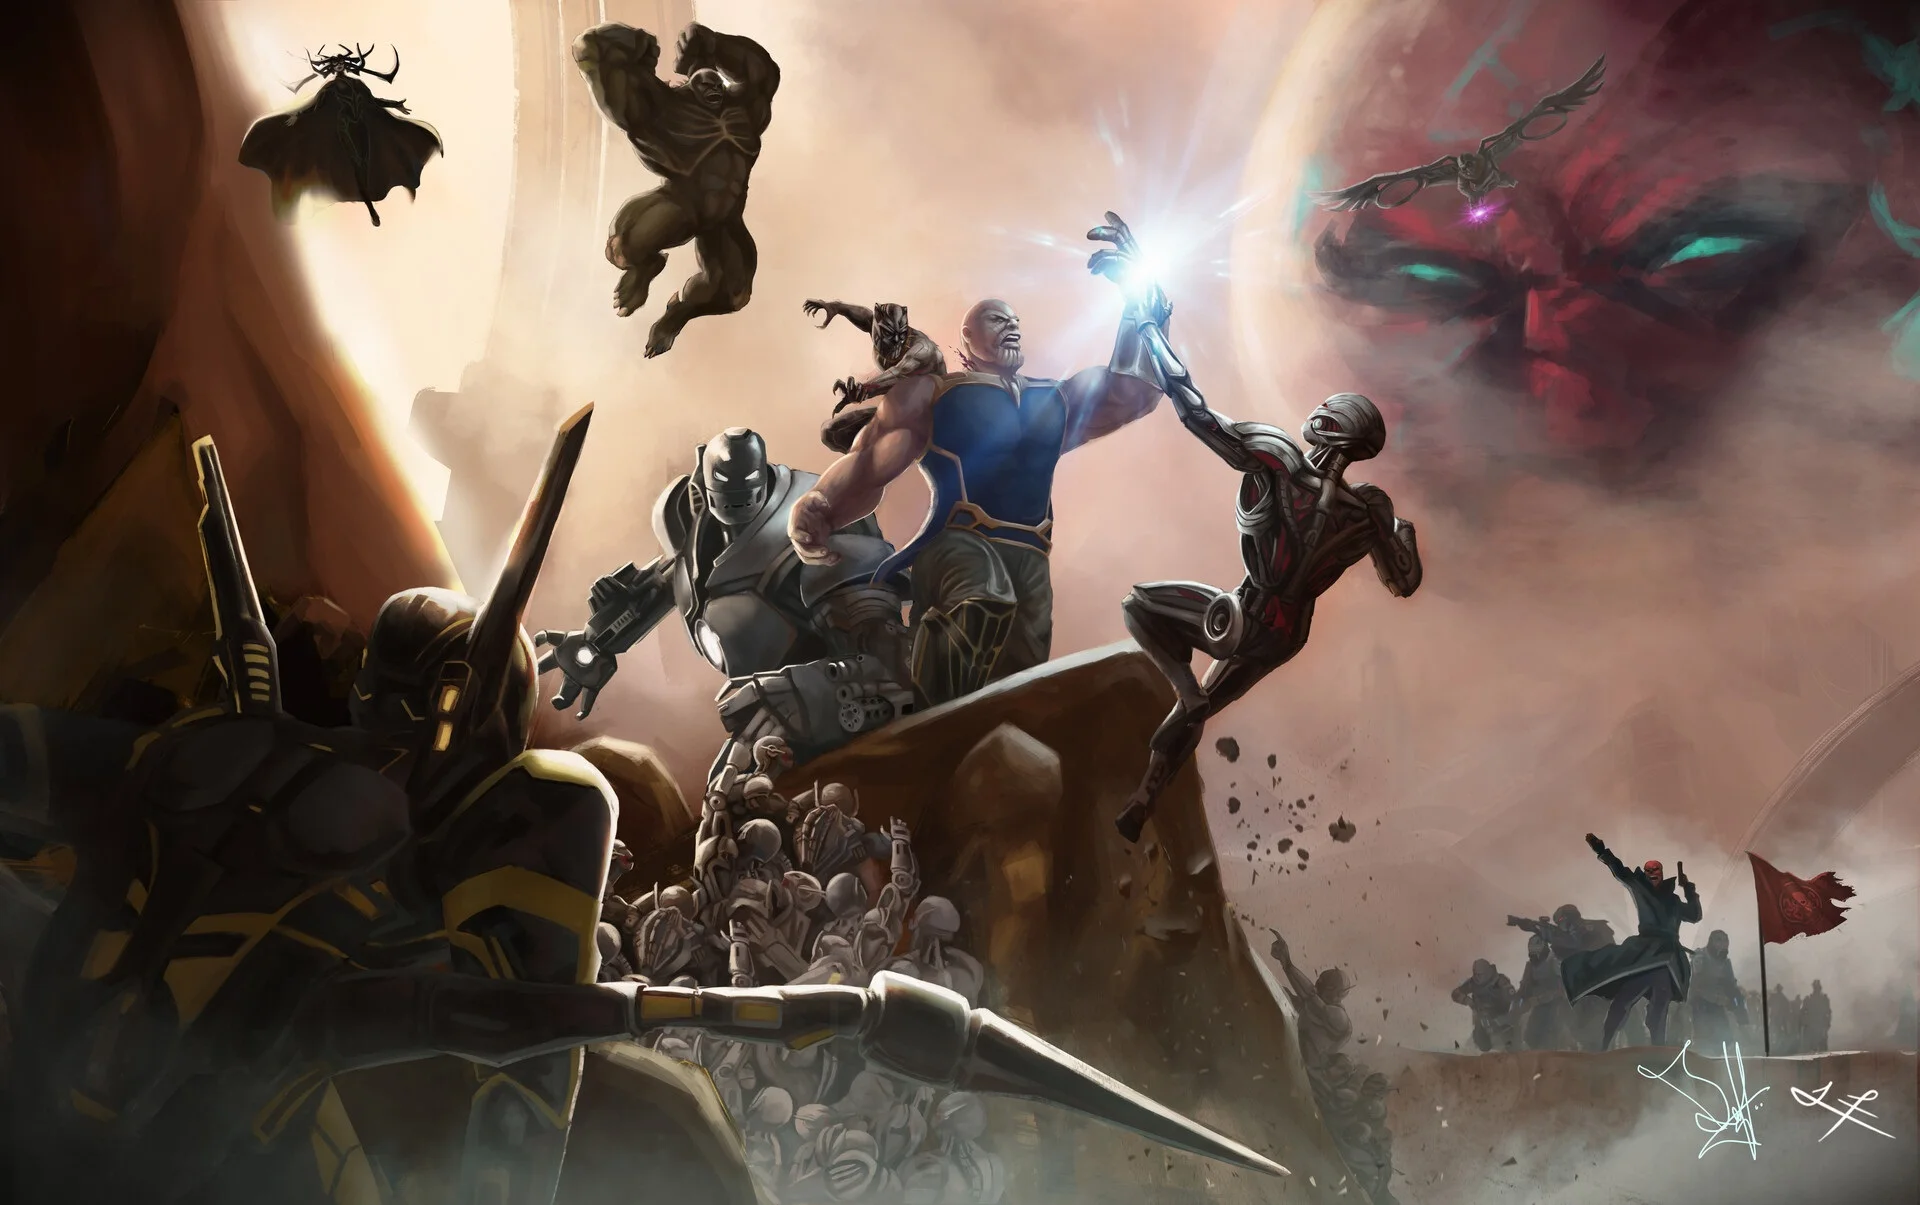 Художник представил битву Таноса с другими суперзлодеями из фильмов Marvel - фото 1